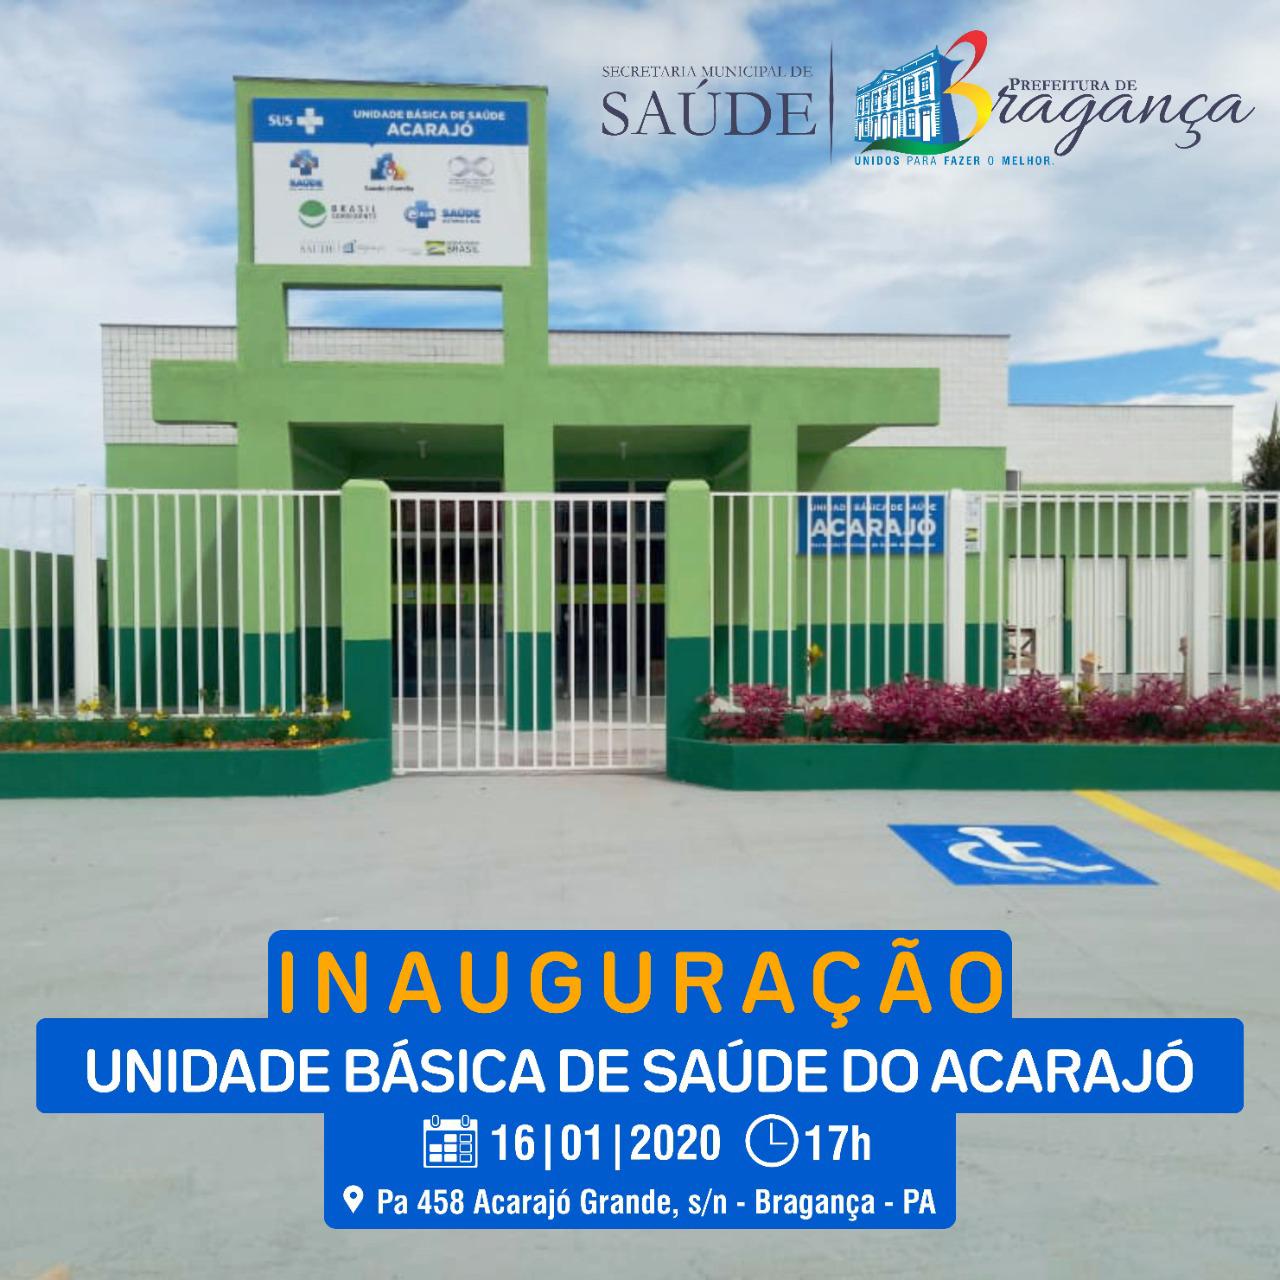 Inaugaração UBS Acarajo